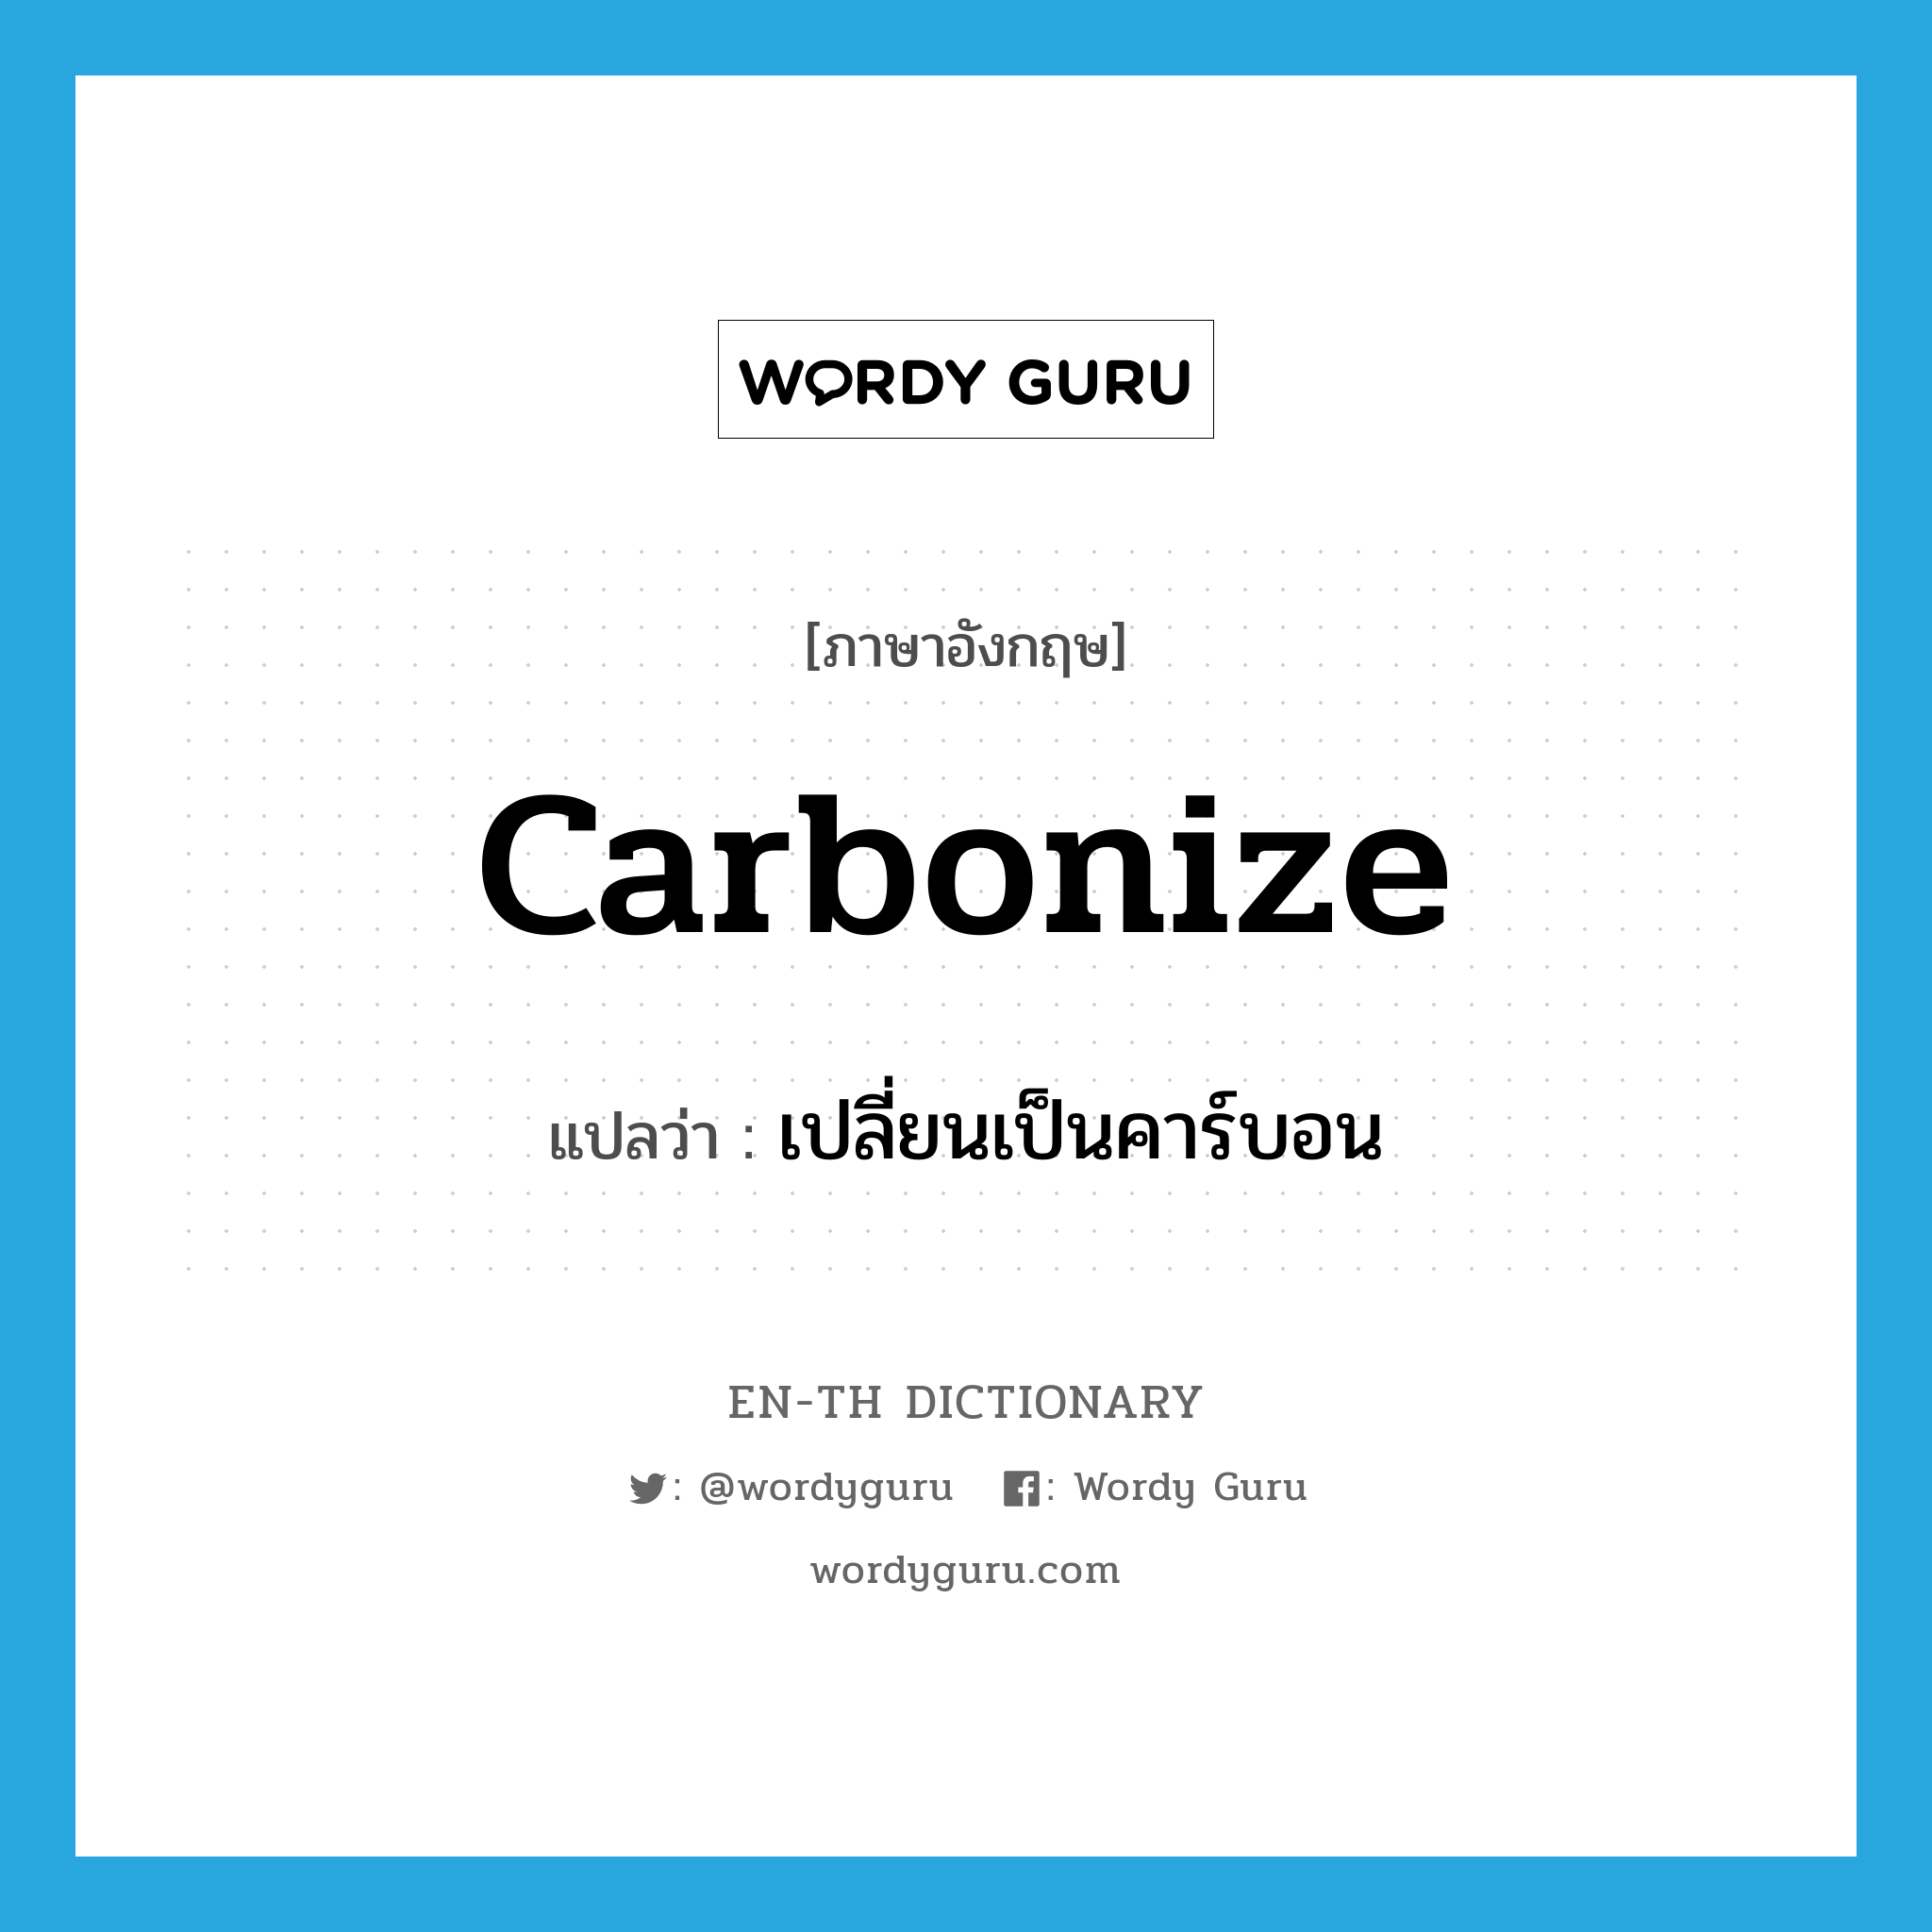 เปลี่ยนเป็นคาร์บอน ภาษาอังกฤษ?, คำศัพท์ภาษาอังกฤษ เปลี่ยนเป็นคาร์บอน แปลว่า carbonize ประเภท VI หมวด VI